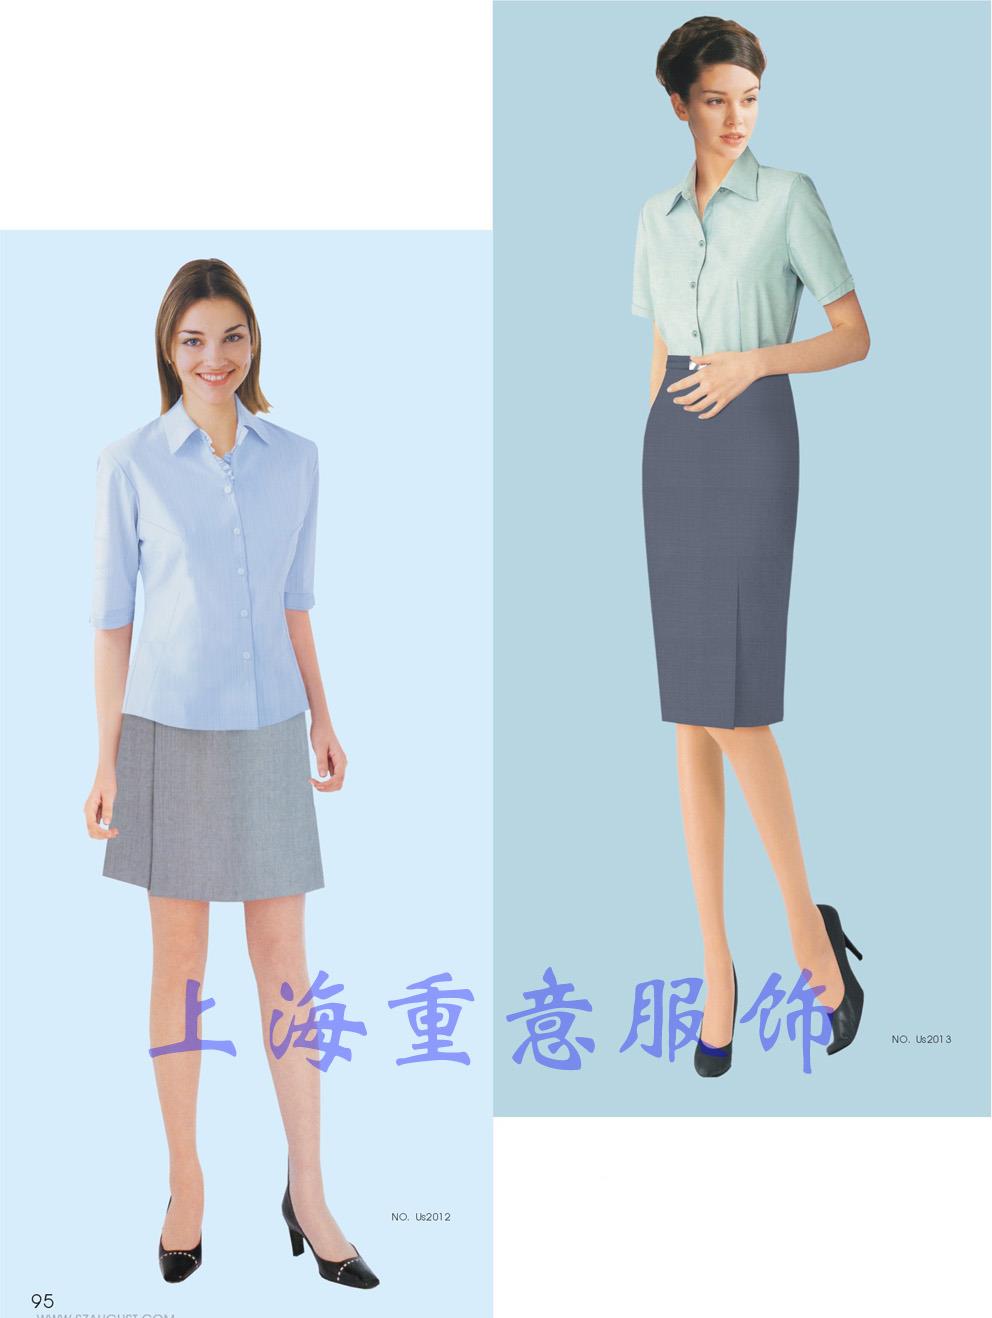 上海夏季衬衫定做/衬衫定制厂家/订做全棉衬衫/上海订制短袖衬衫